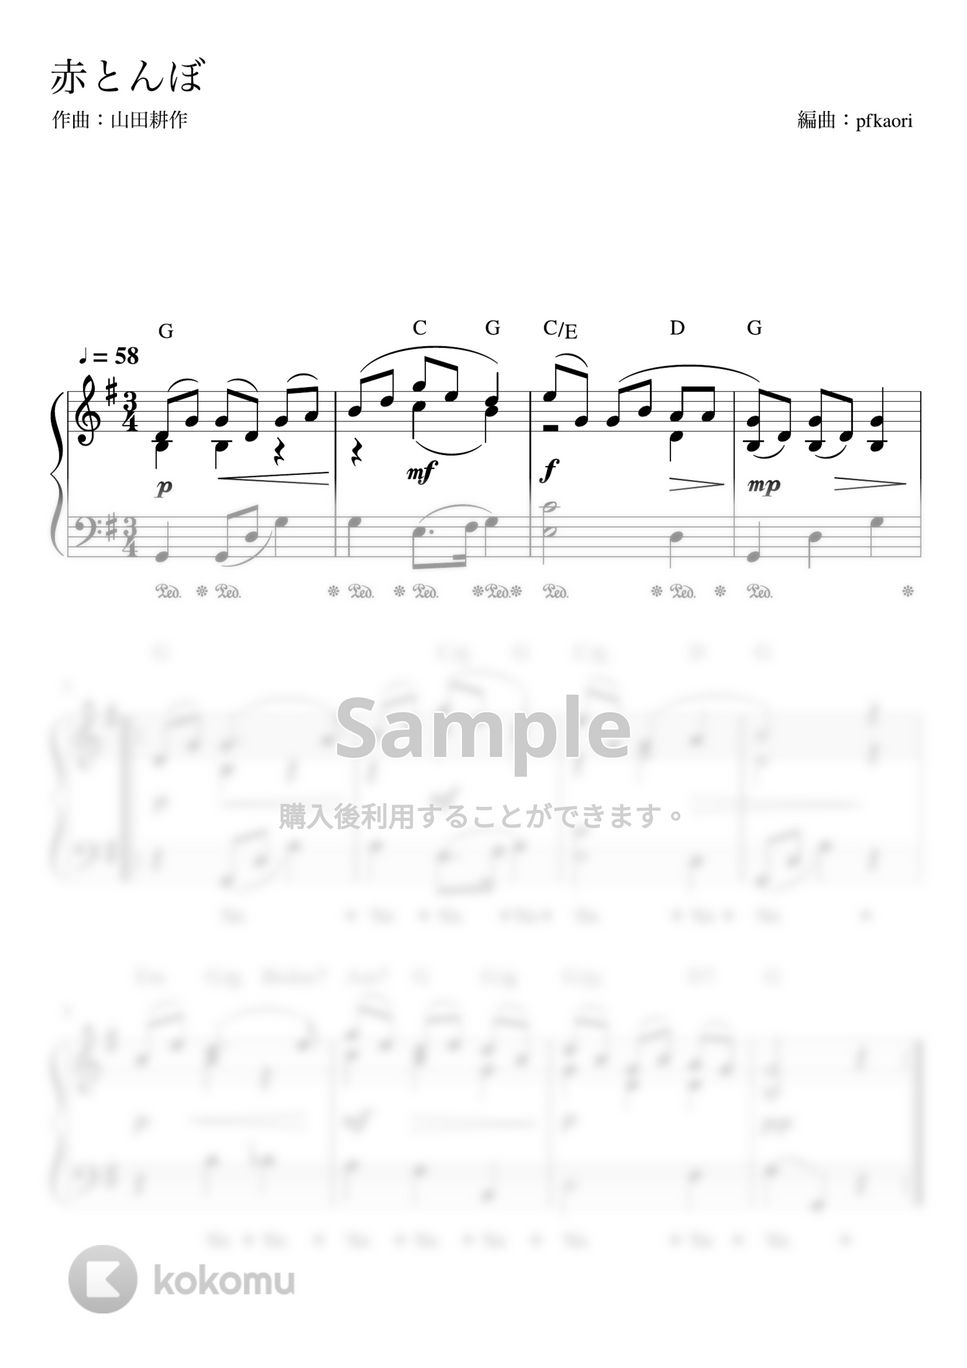 赤とんぼ (G・ピアノソロ初~中級 コード・ペダル付き) by pfkaori